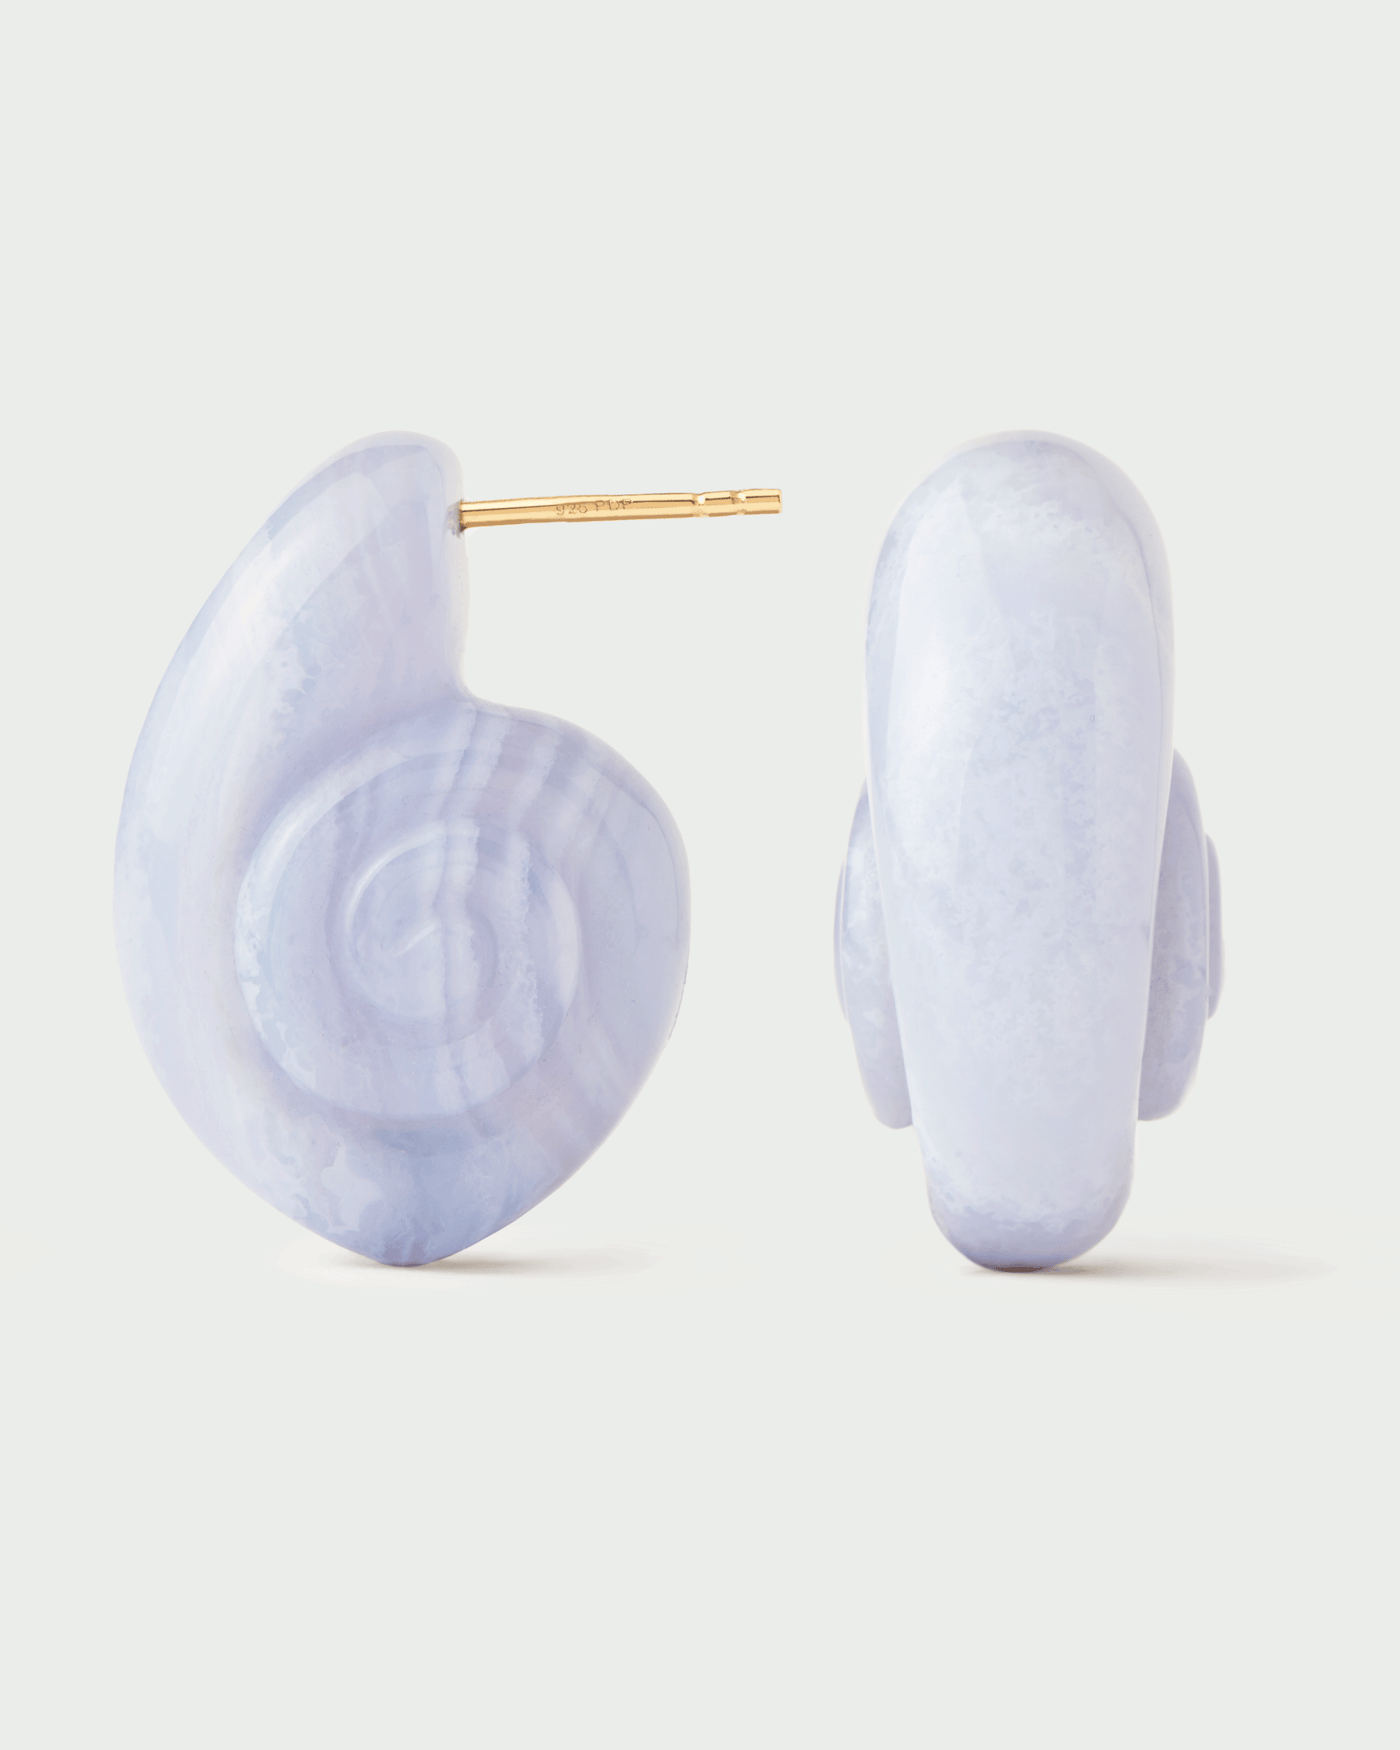 Blauer Spitzenachat Shell Ohrringe. Vergoldete skulpturale handgeschnitzte Meeresschnecken-Ohrringe aus blauem Edelstein . Erhalten Sie die neuesten Produkte von PDPAOLA. Geben Sie Ihre Bestellung sicher auf und erhalten Sie diesen Bestseller.